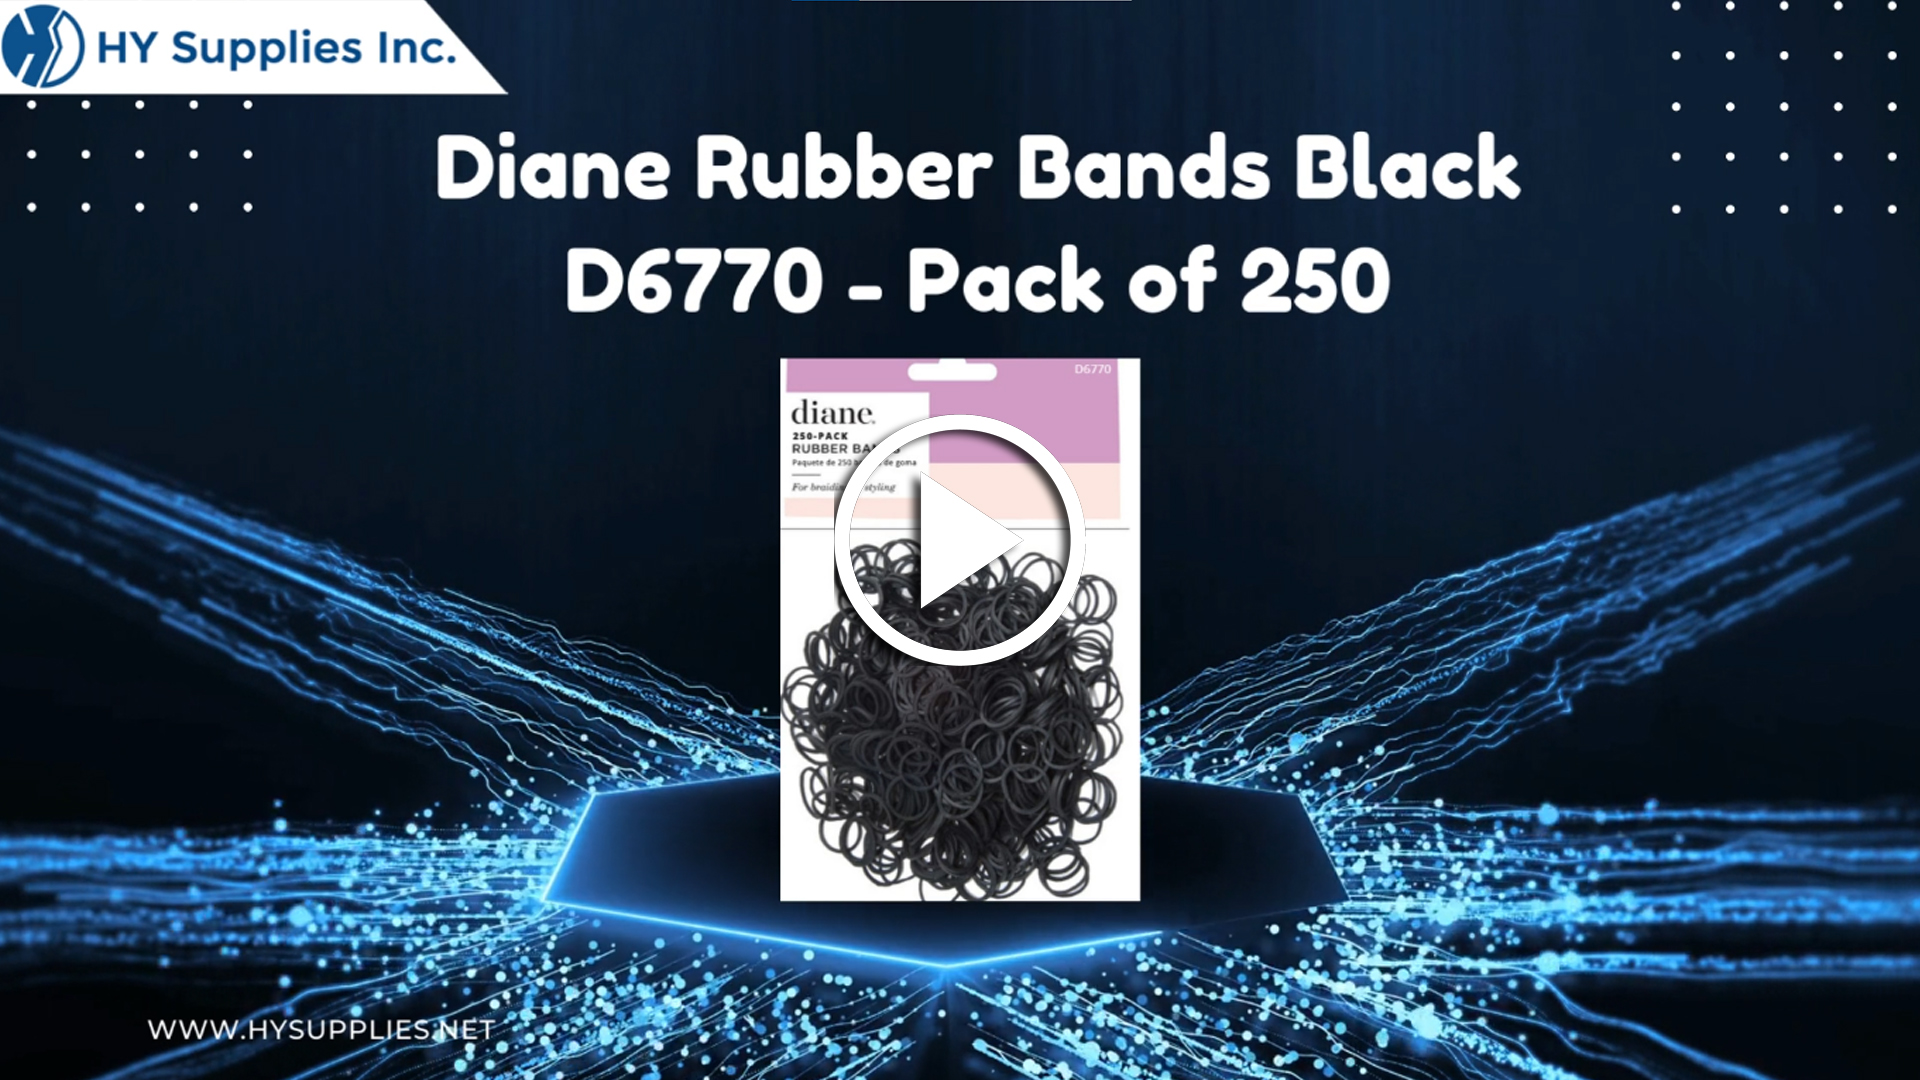 Diane Rubber Bands Black D6770 - Pack of 250